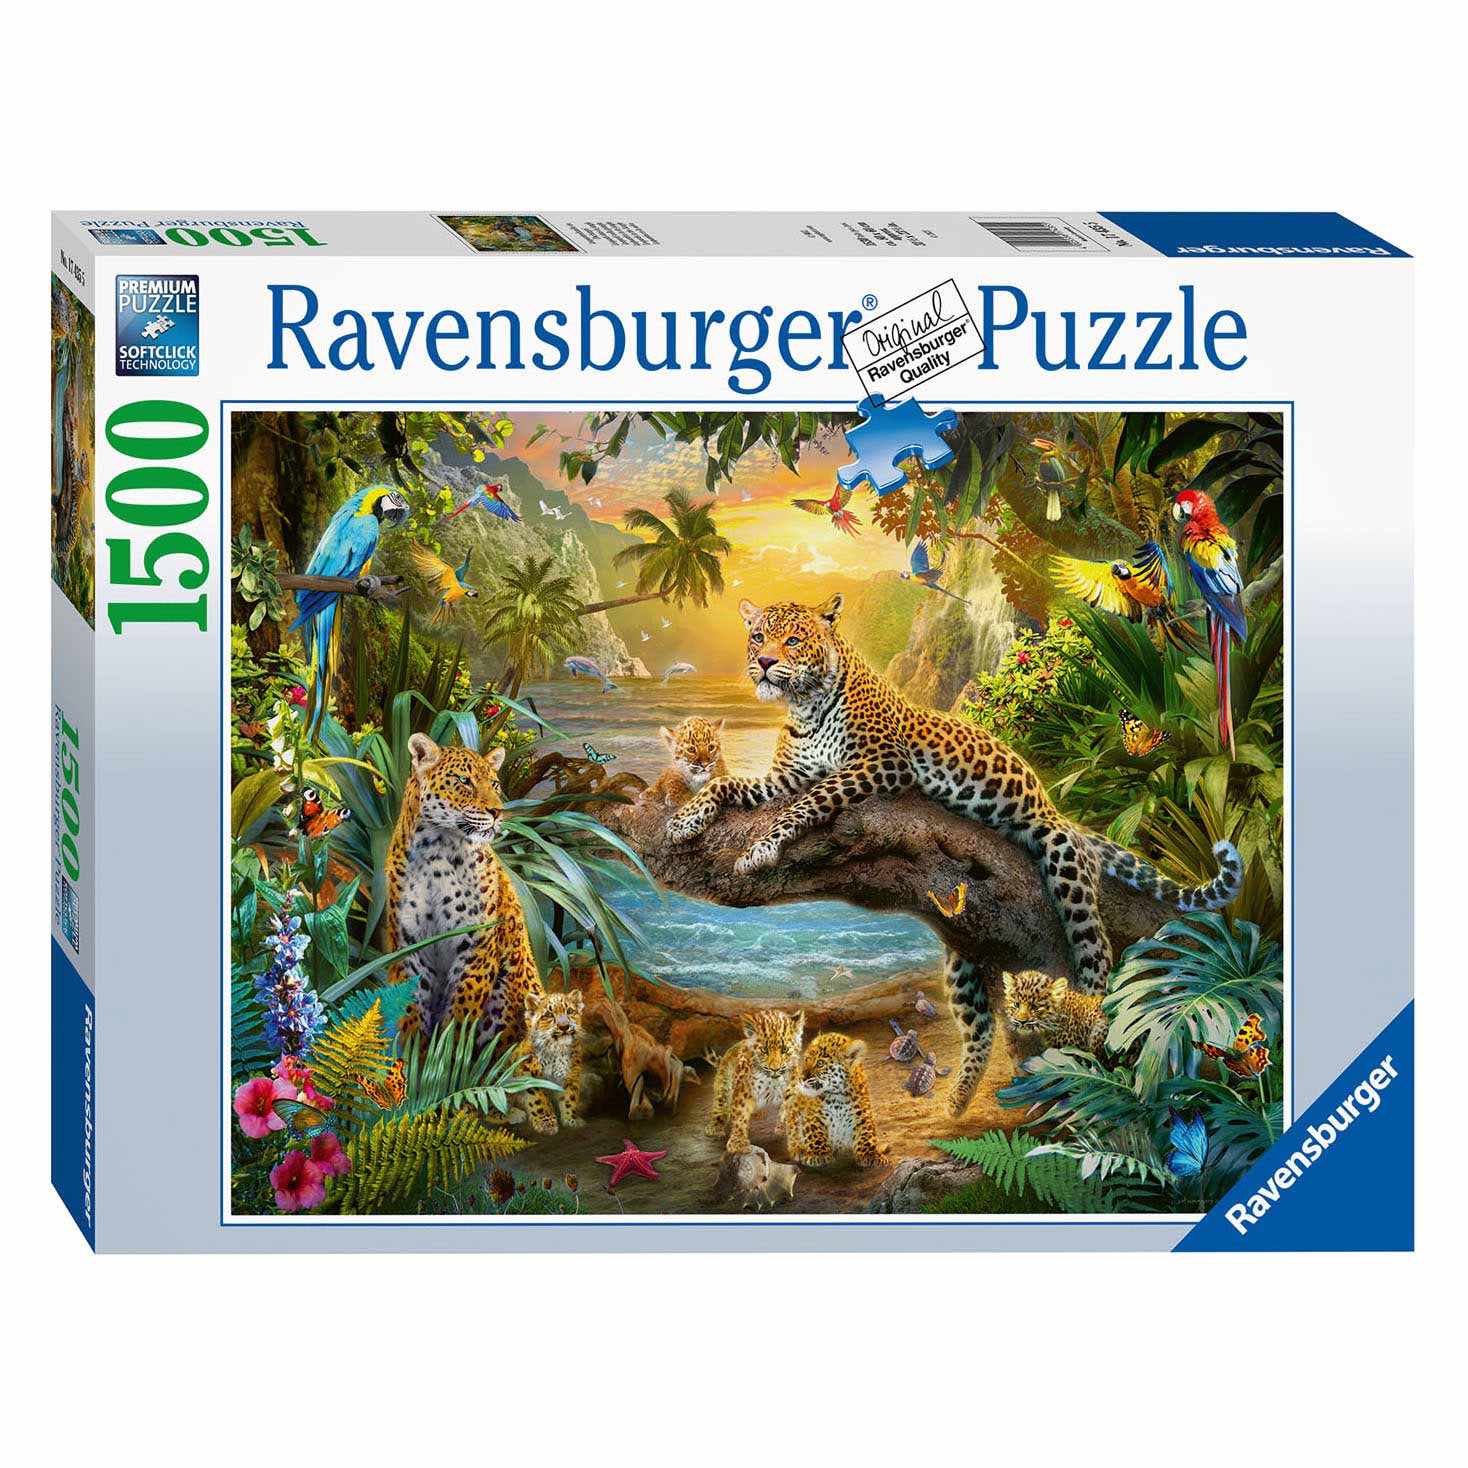 Ravensburger Puzzel Luipaarden in de Jungle